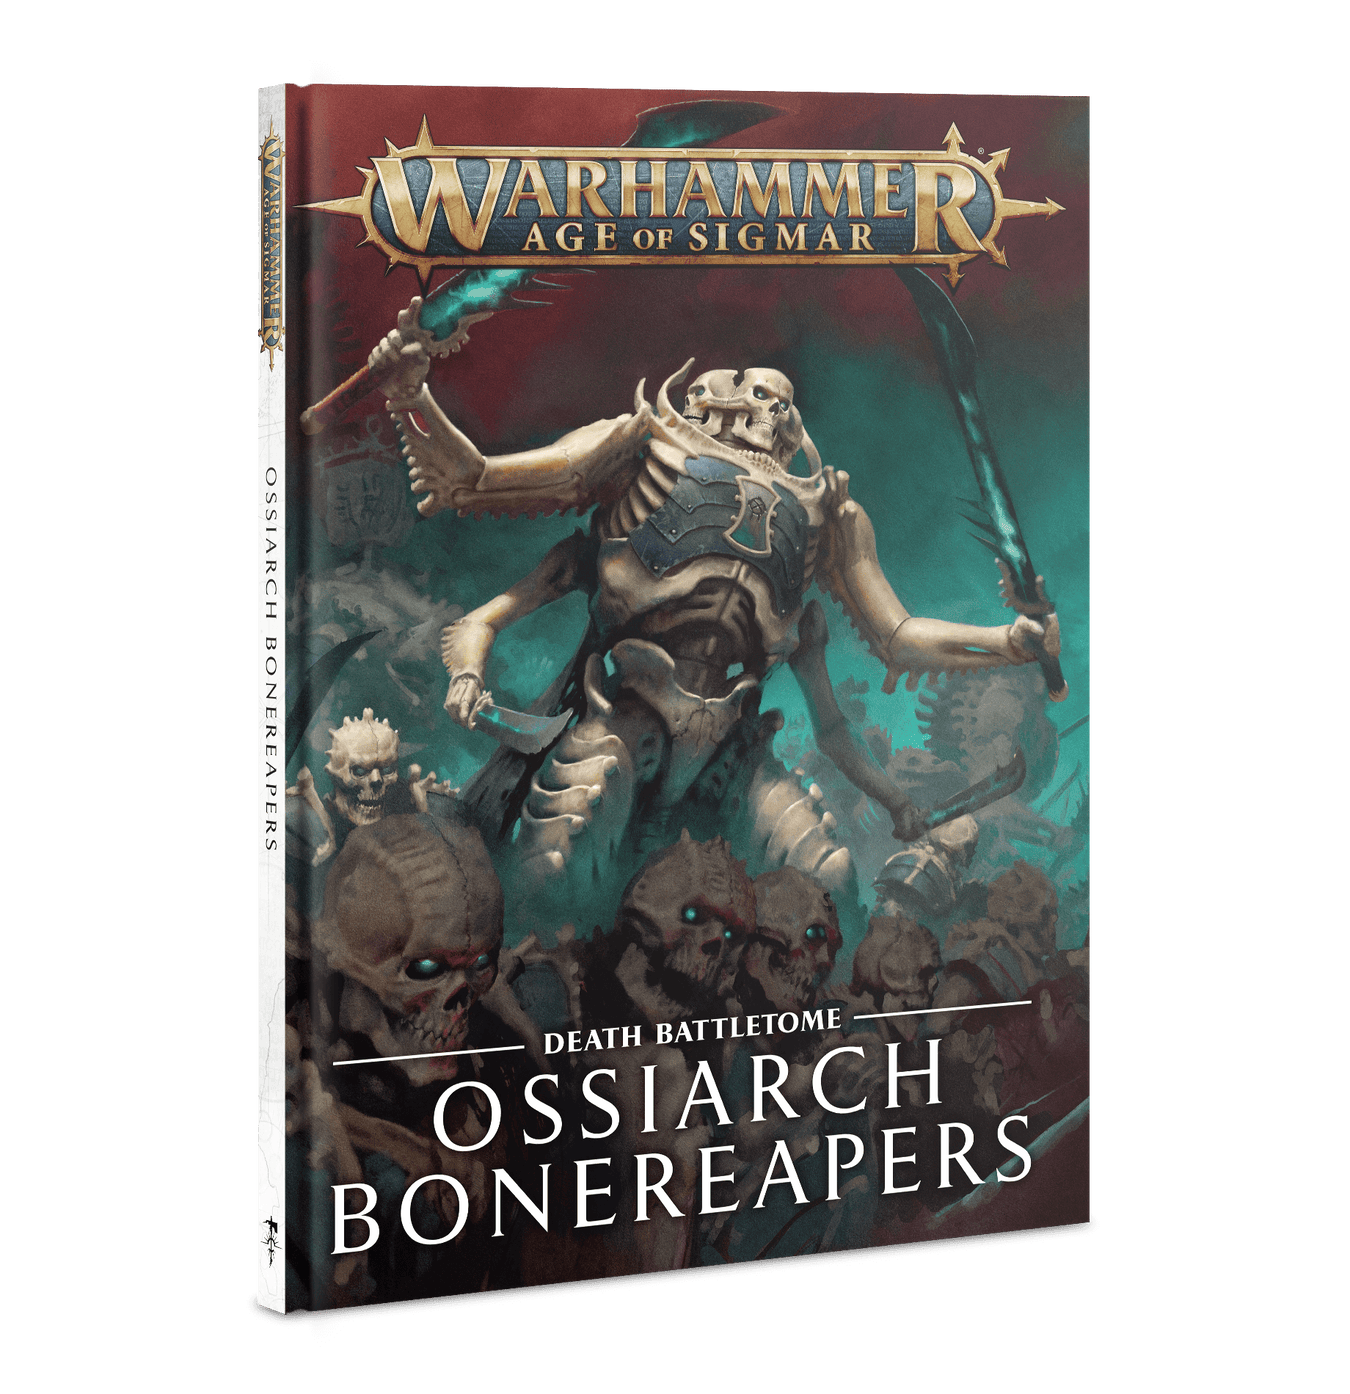 Ossiarch Bonereapers